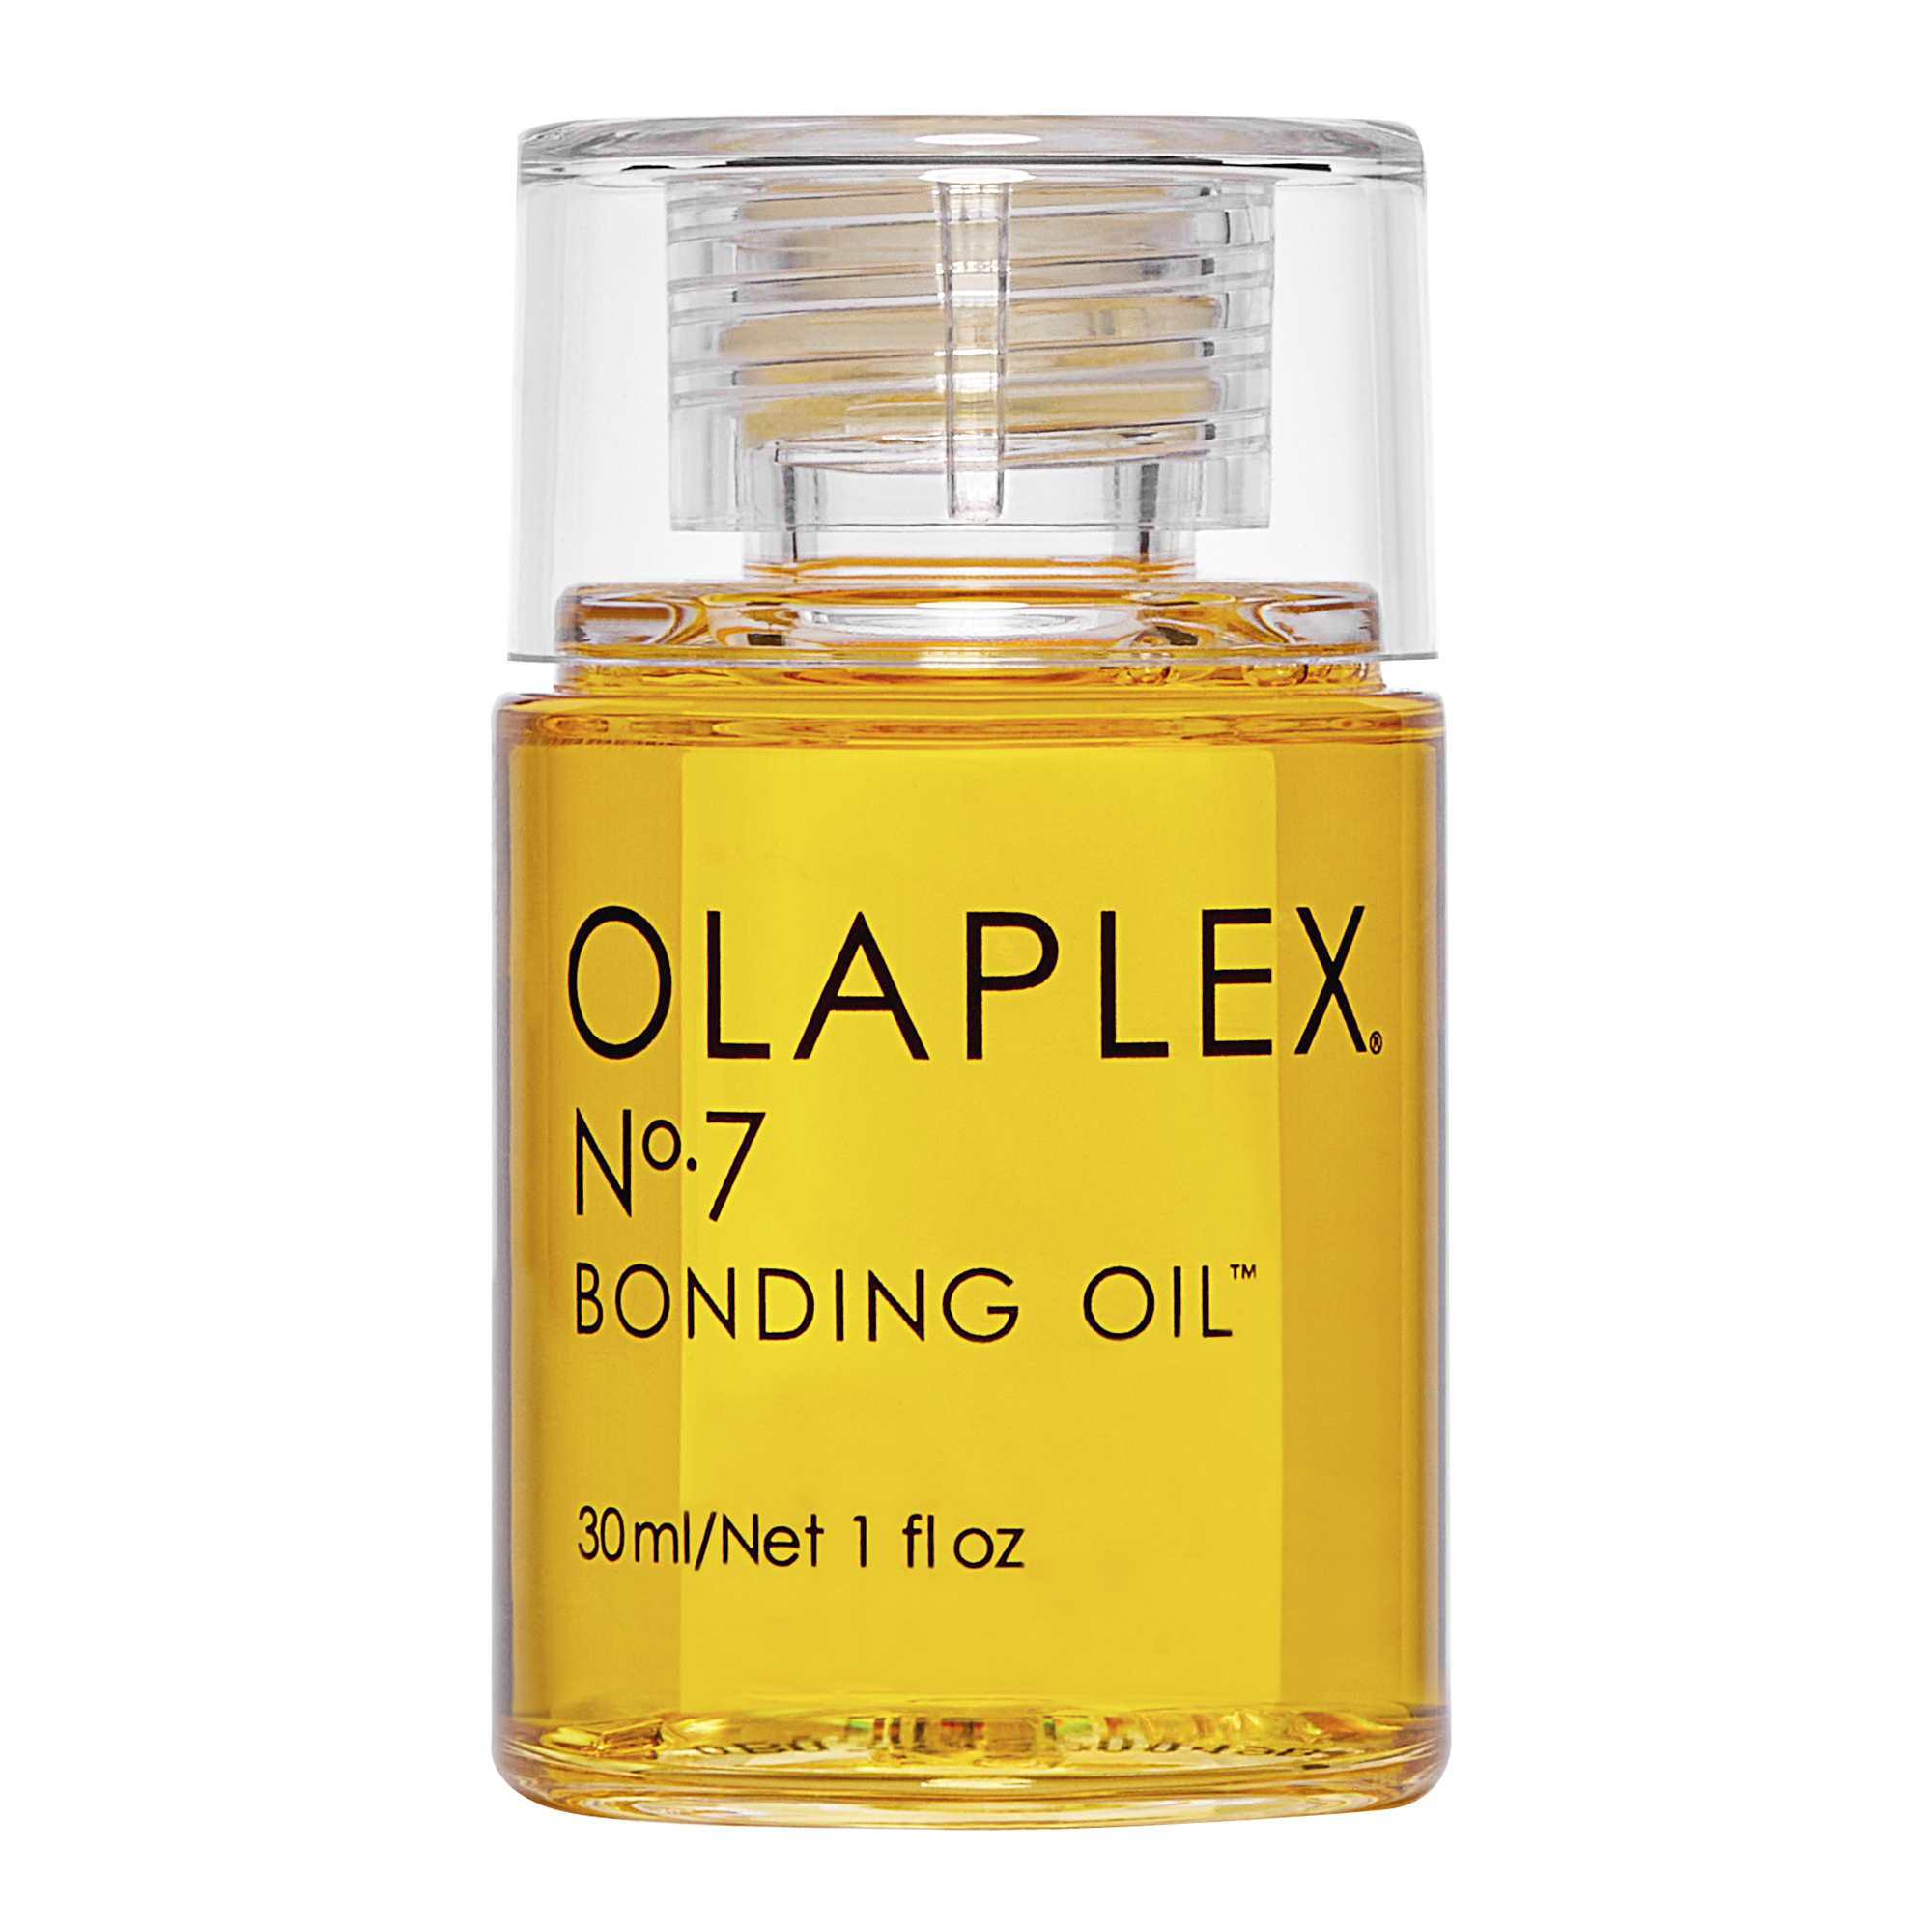 OLAPLEX® N°7 Bonding Oil grid image